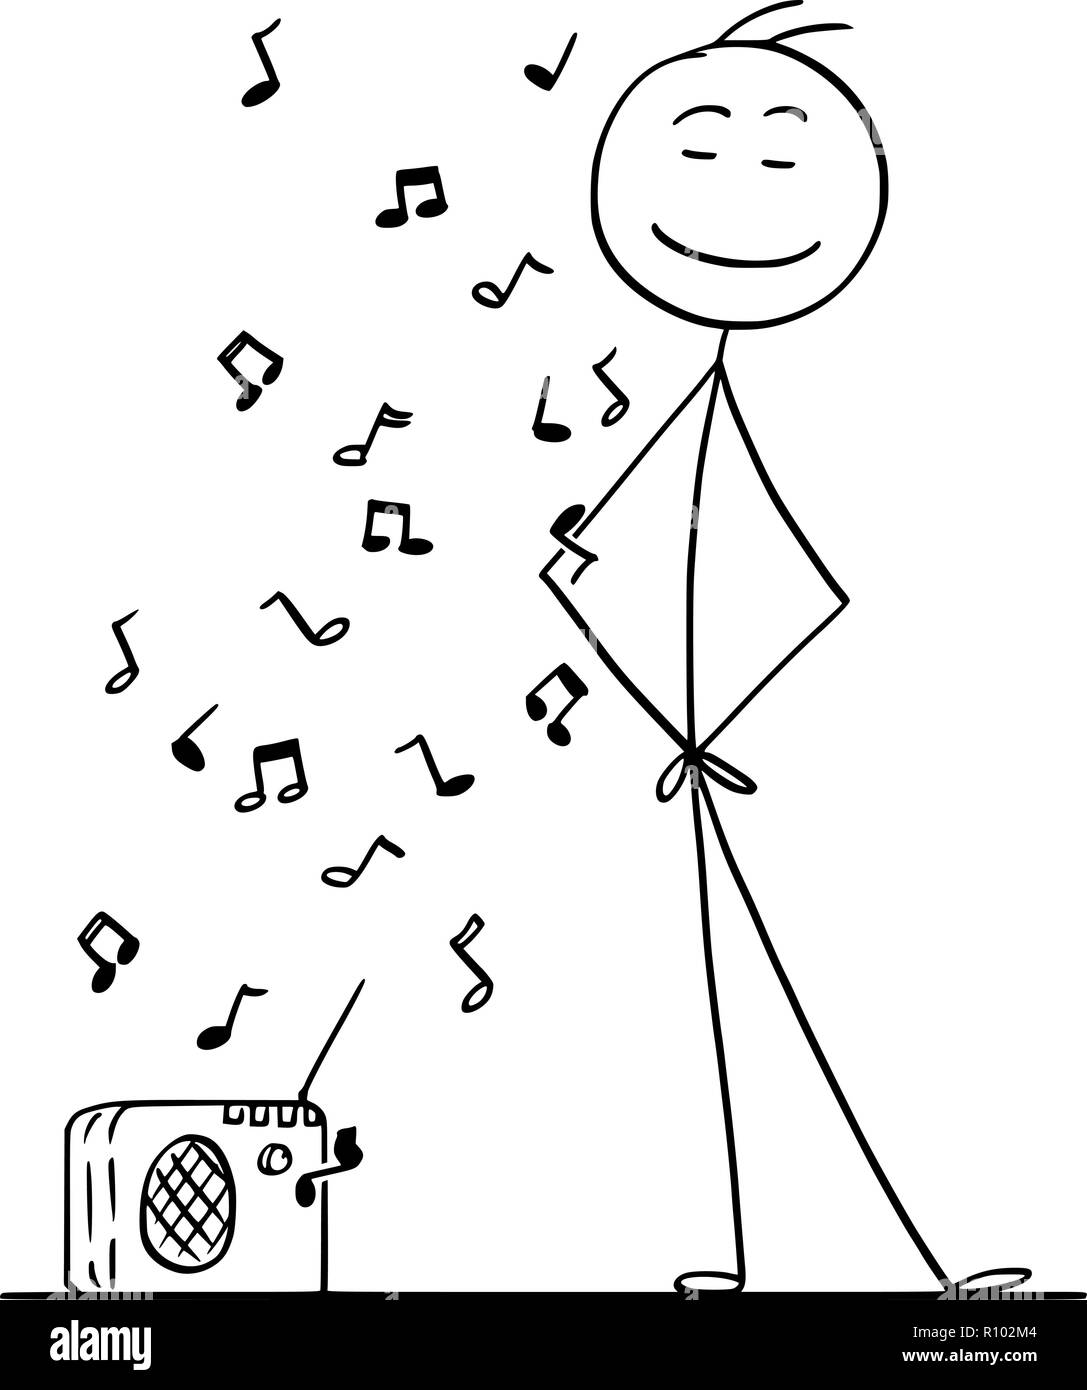 Cartoon stick disegno illustrazione concettuale dell'uomo godendo di un  ascolto di musica da piccola radio Immagine e Vettoriale - Alamy